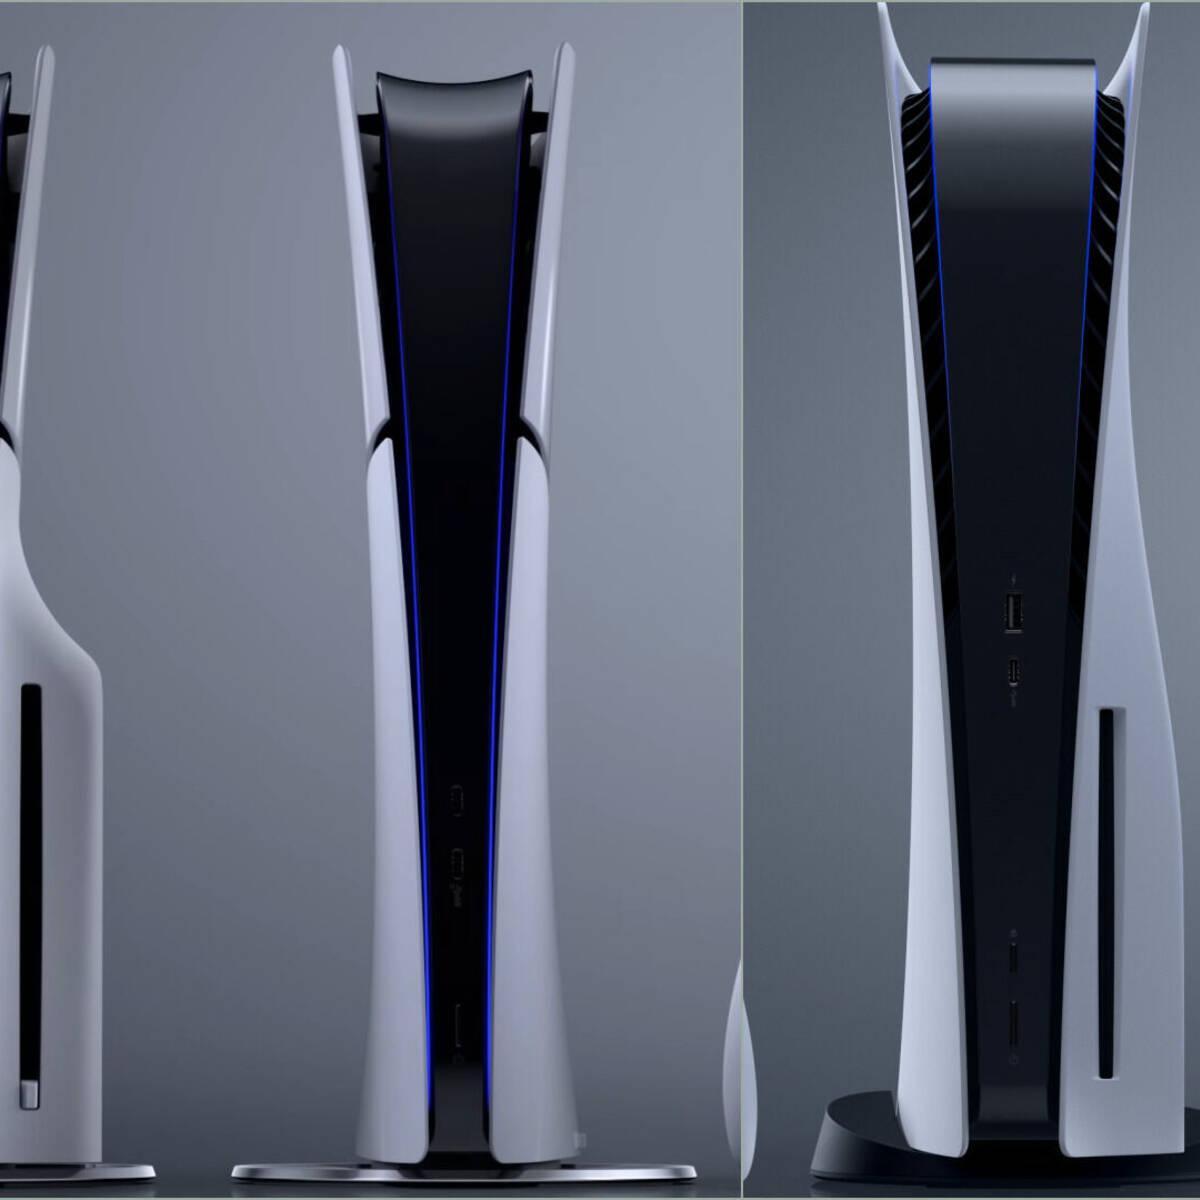 PlayStation 5 Slim comparada con PlayStation 5 en imágenes